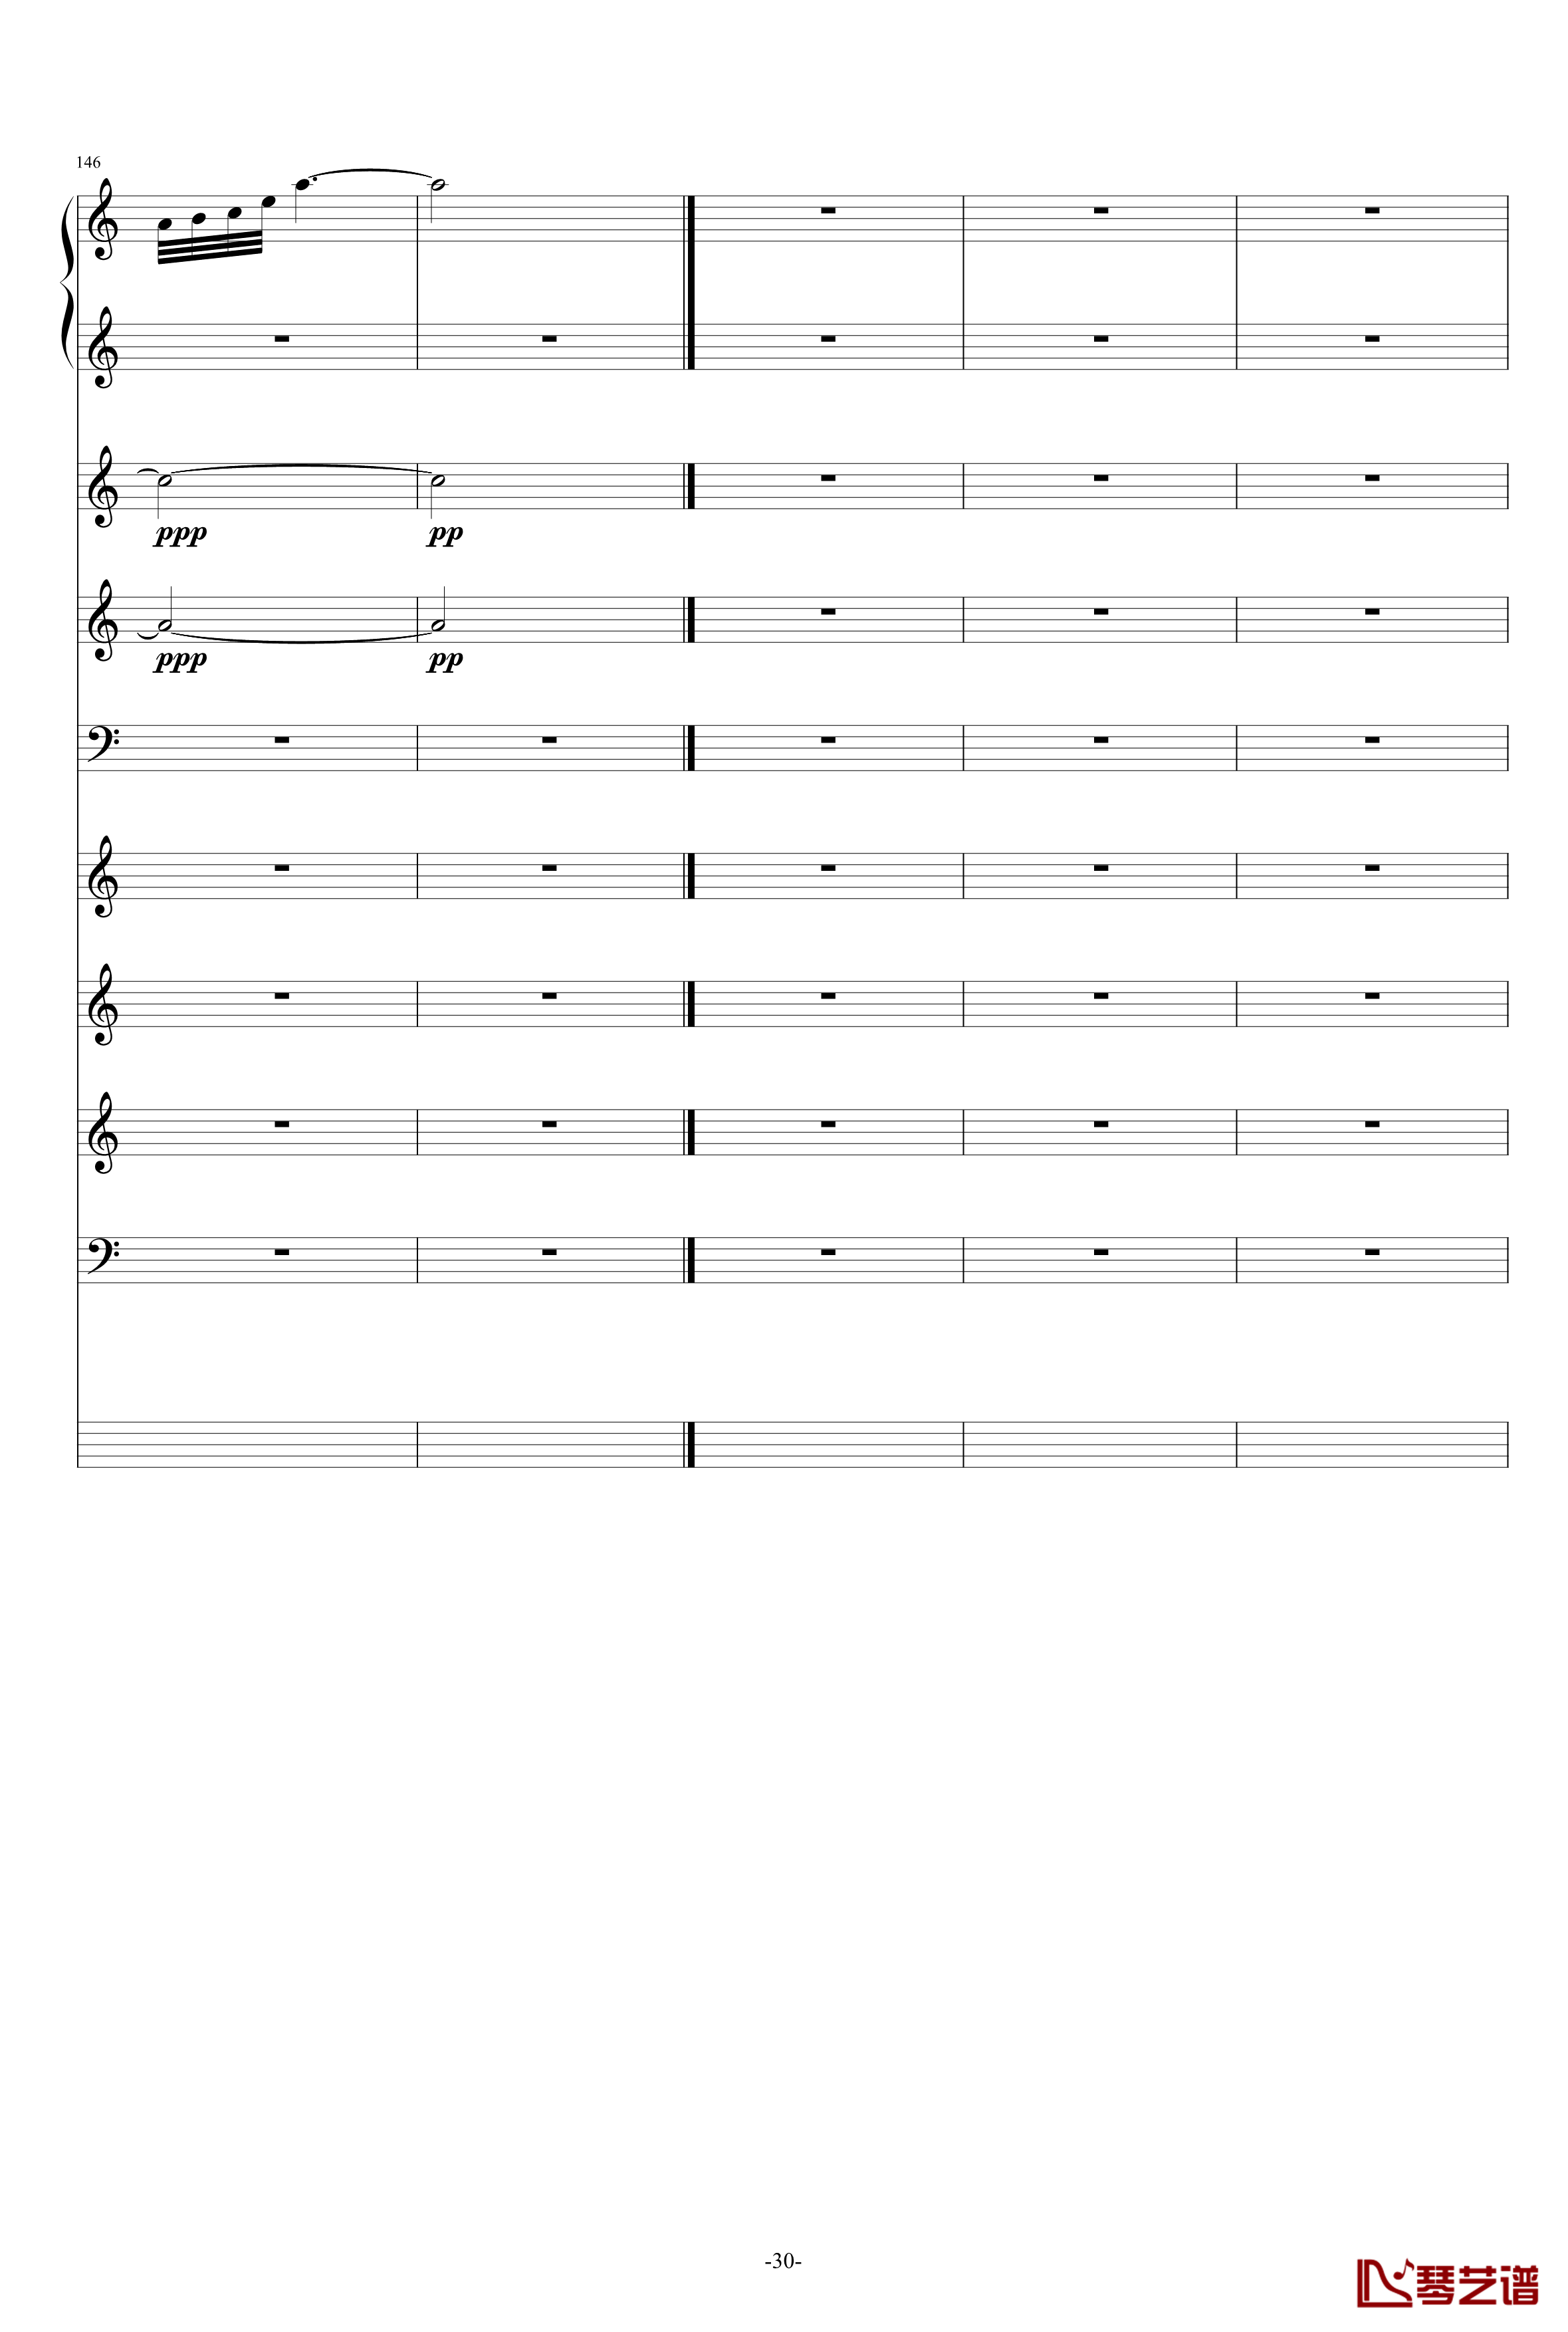 巴兰榭狂想曲钢琴谱-卓越之剑-总谱30